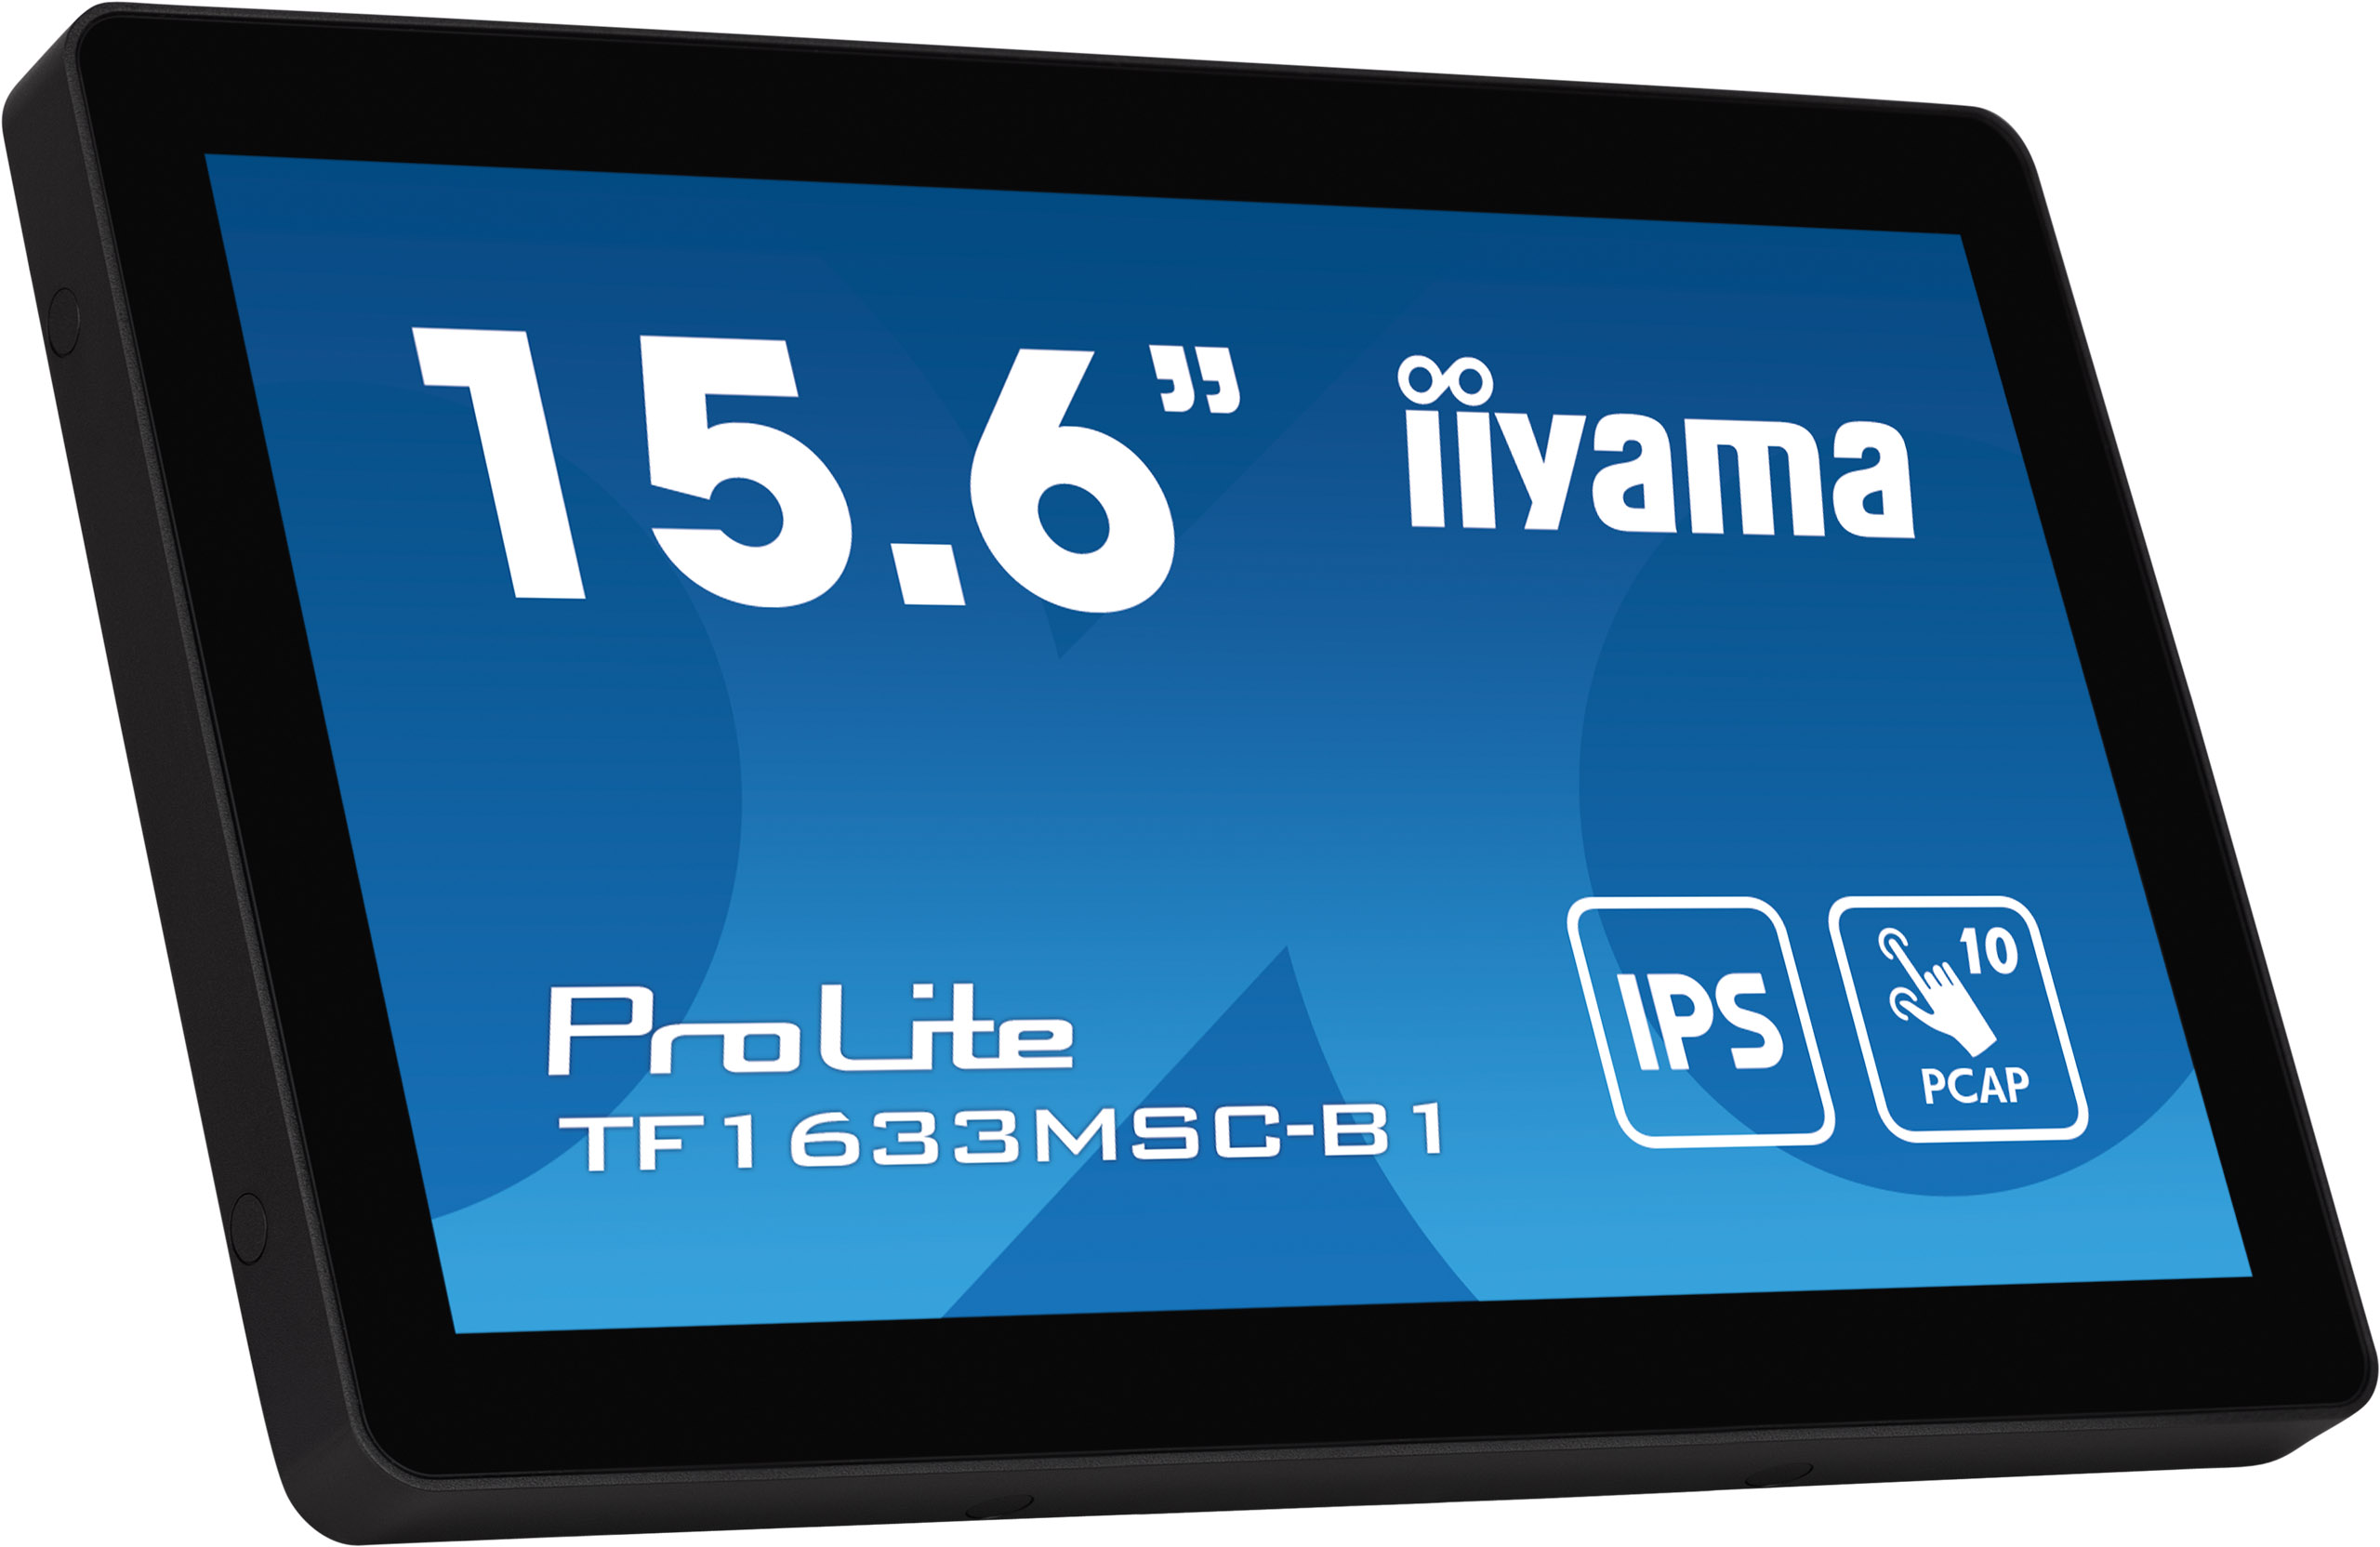 16" iiyama TF1633MSC-B1 